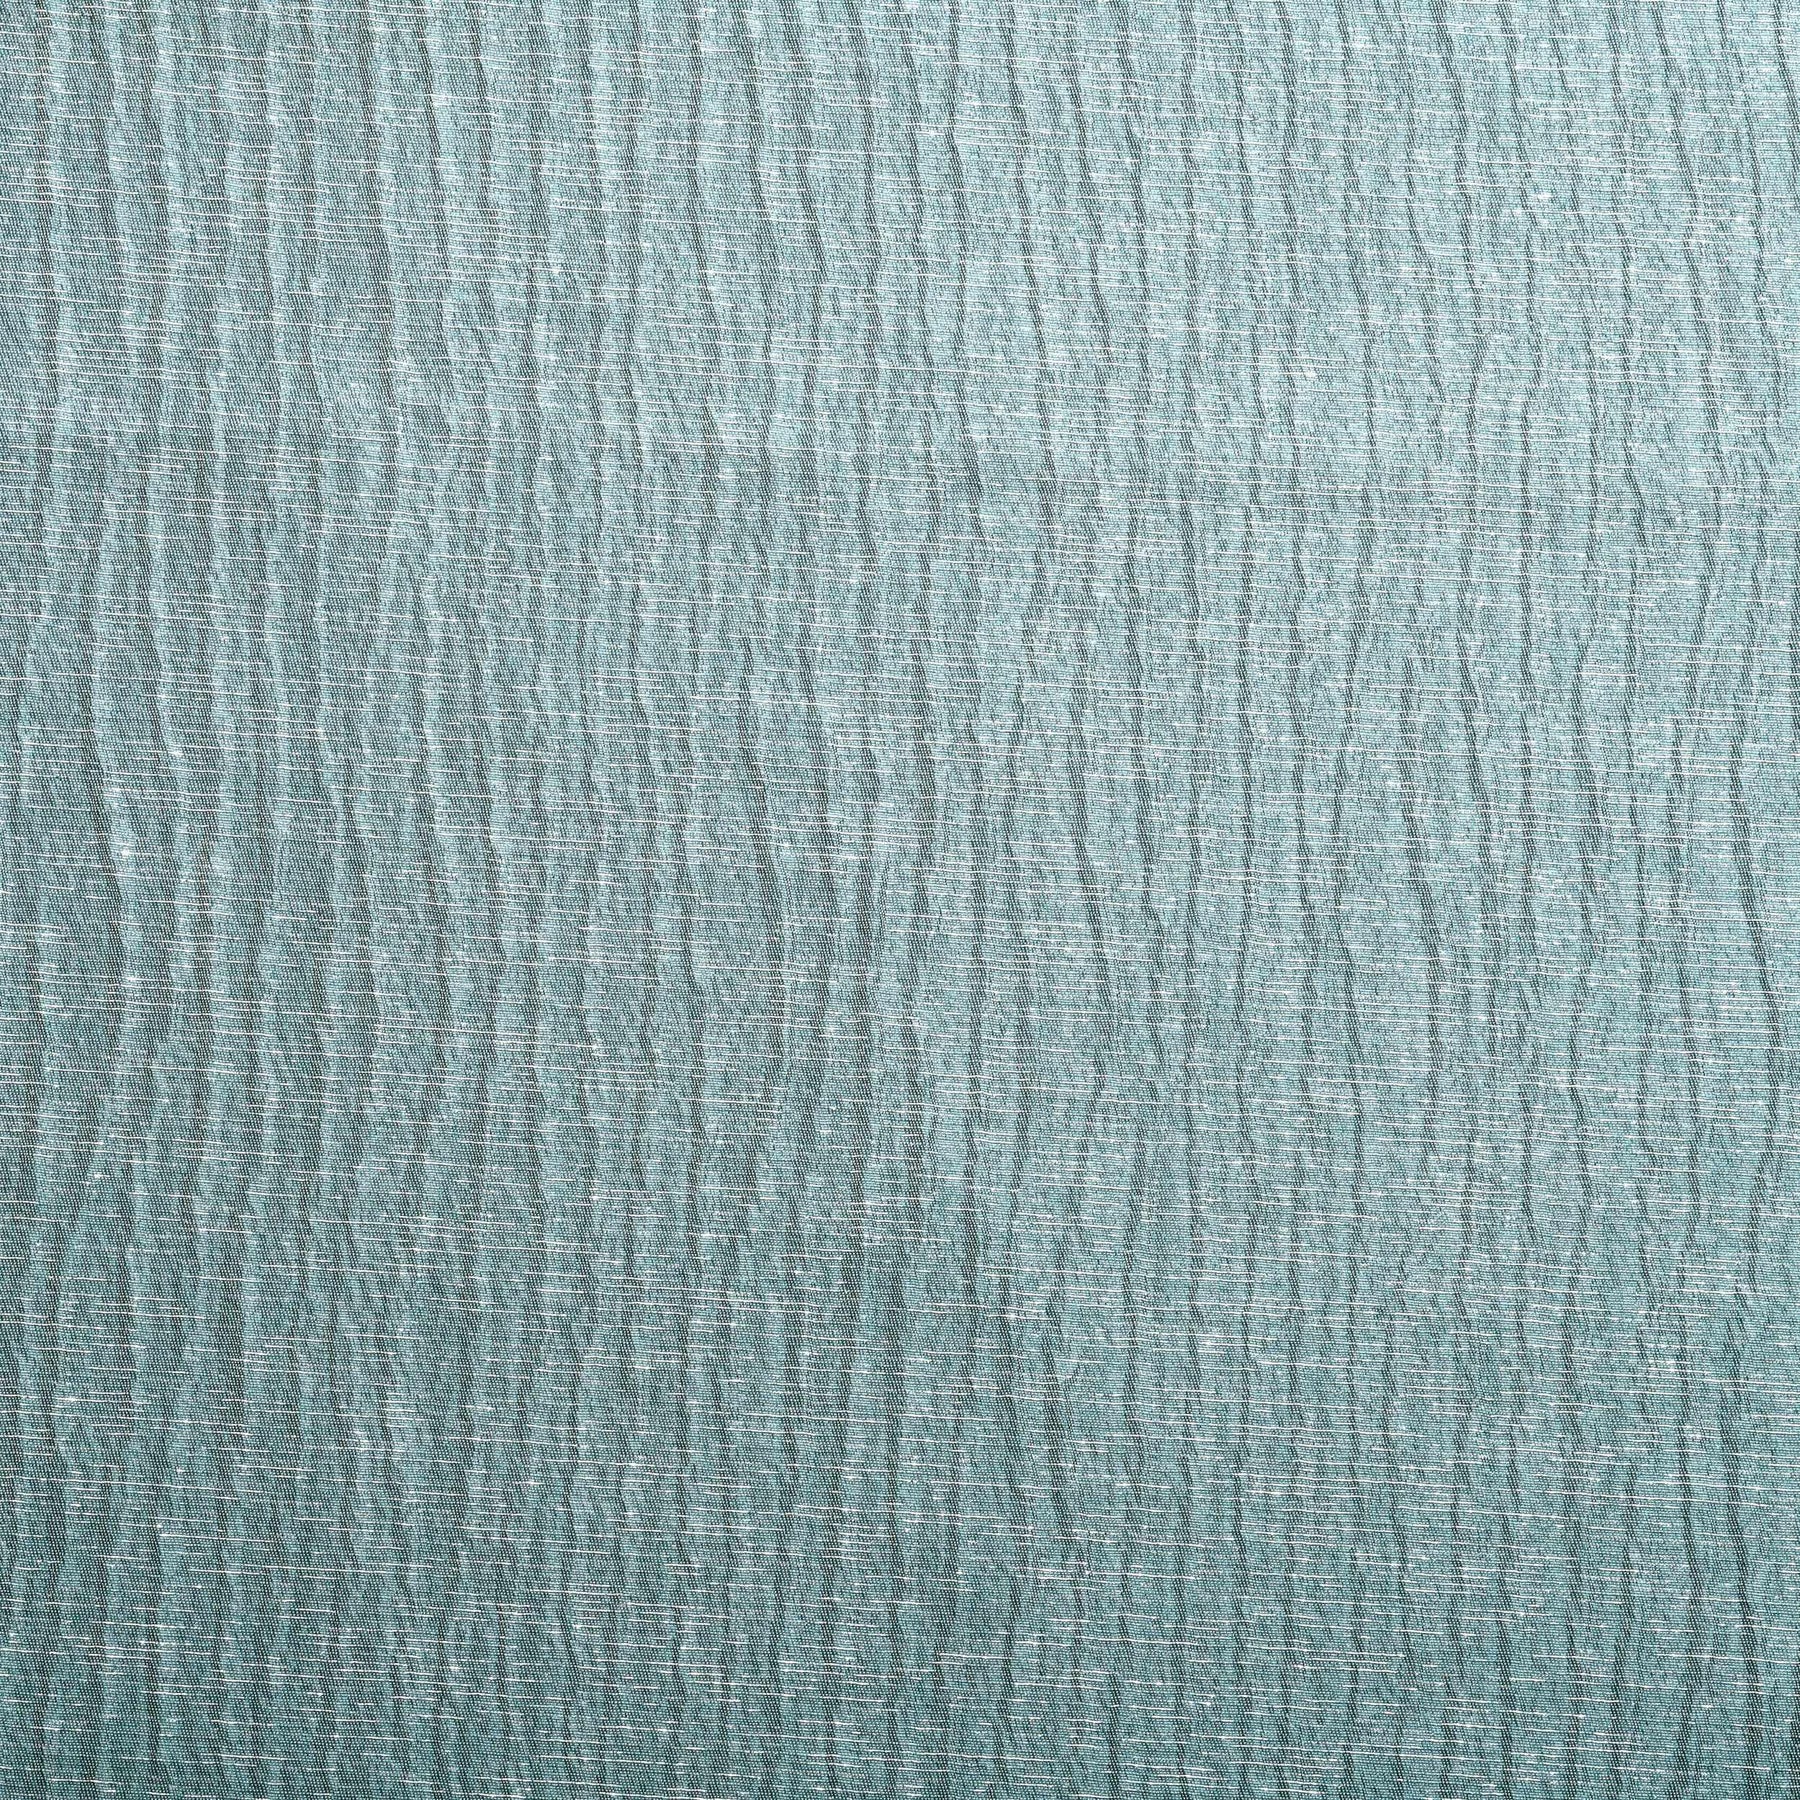 Metallic Jacquard 2-Piece Grommet Curtain Panel Set - Sea Foam